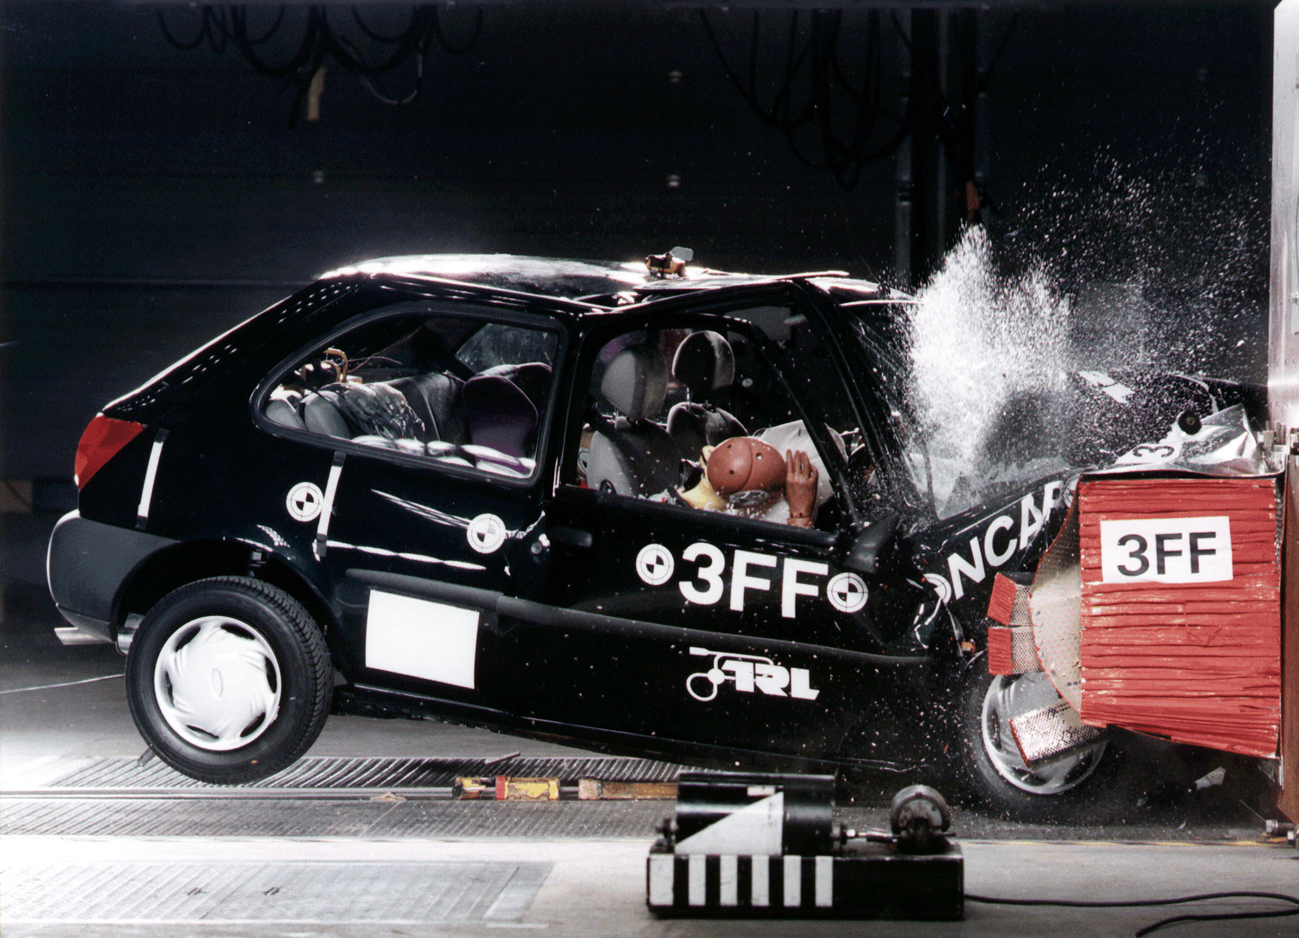 For Fiesta var blandt de første biler, Euro NCAP testede i 1997. Dengang blev det til tre Euro NCAP-stjerner. Siden begyndte Ford at tage sikkerhed langt mere alvorligt, og da den seneste udgave af Ford Fiesta blev testet i 2012 var det til de maksimale fem Euro NCAP-stjerner.